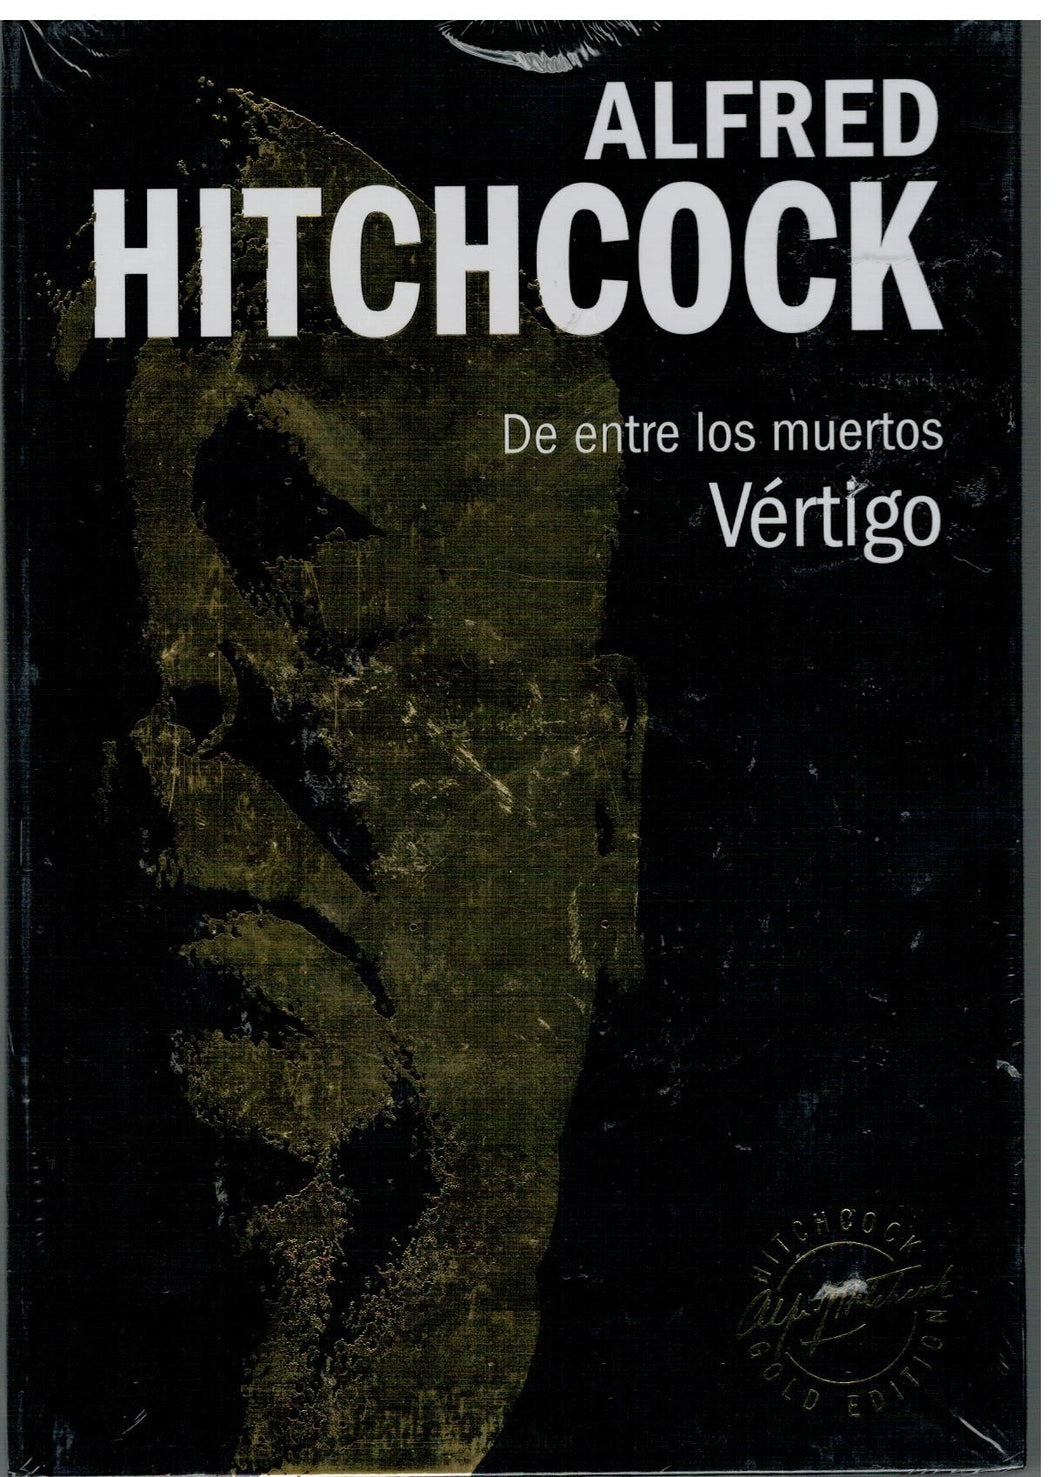 Vértigo - De entre los muertos (DVD Hitchcock) + 1 de regalo de esta colección